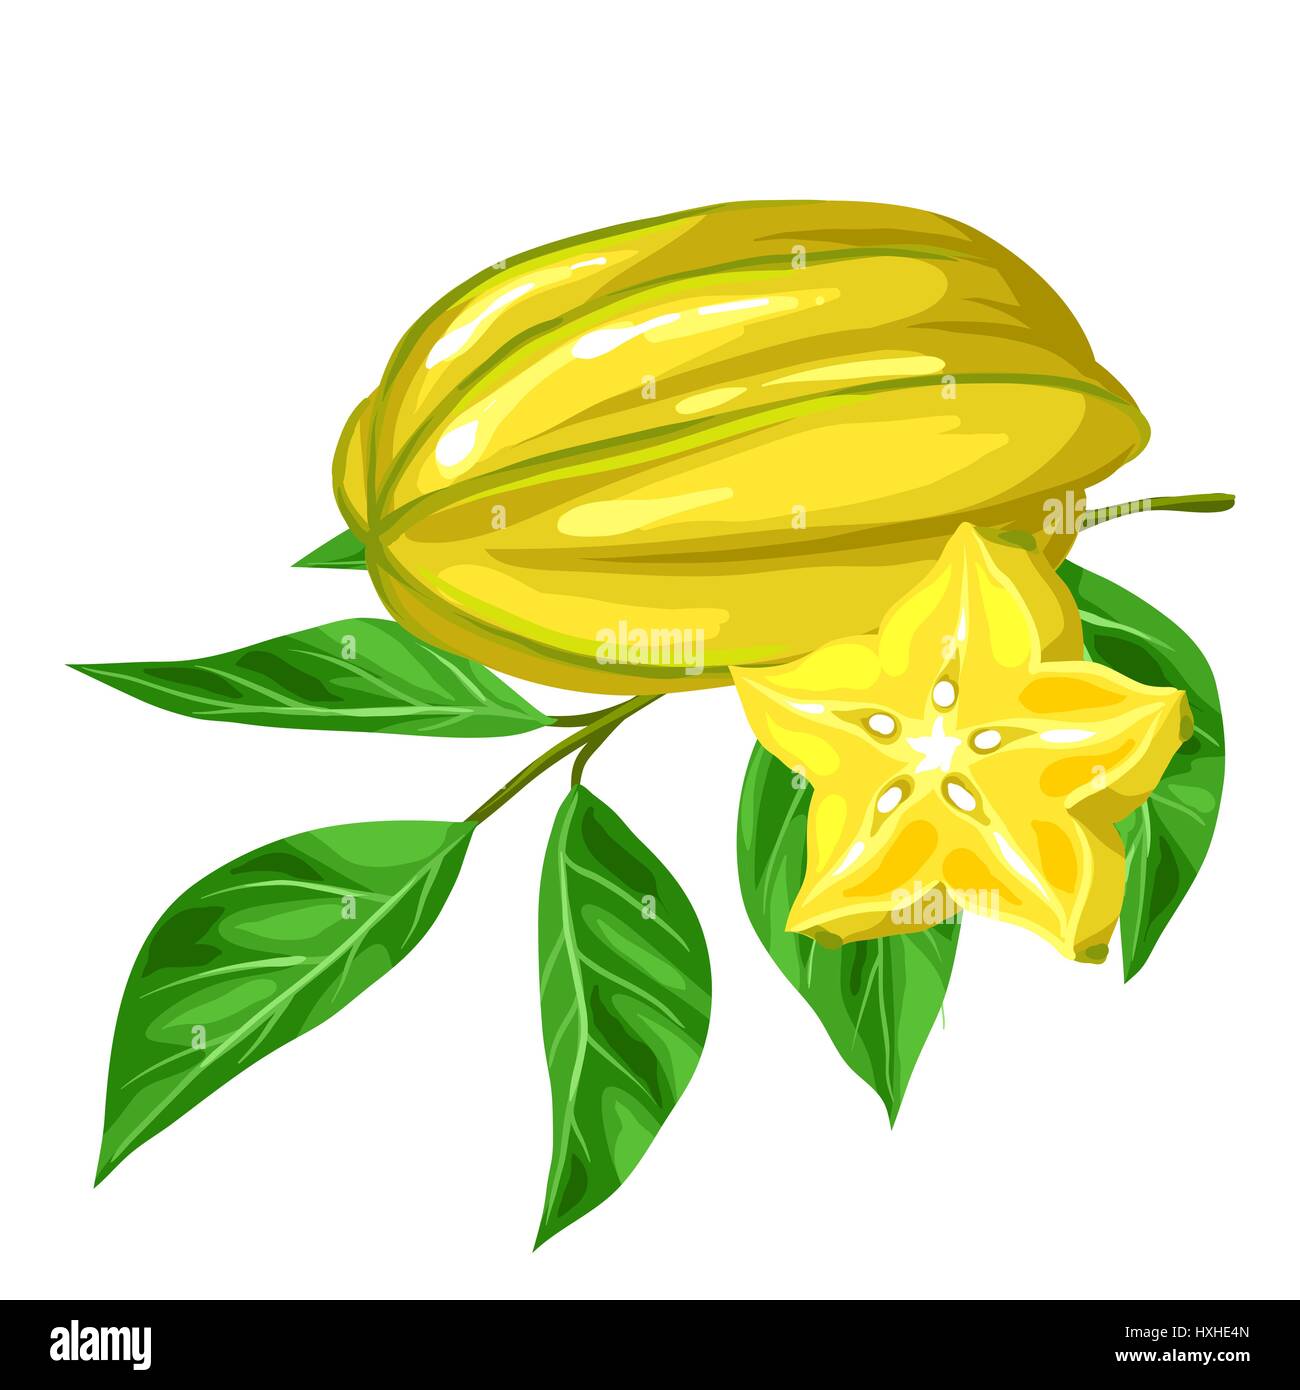 Sternfrucht Karambolen isoliert auf weißem Hintergrund. Illustration der  tropischen Pflanze Stock-Vektorgrafik - Alamy